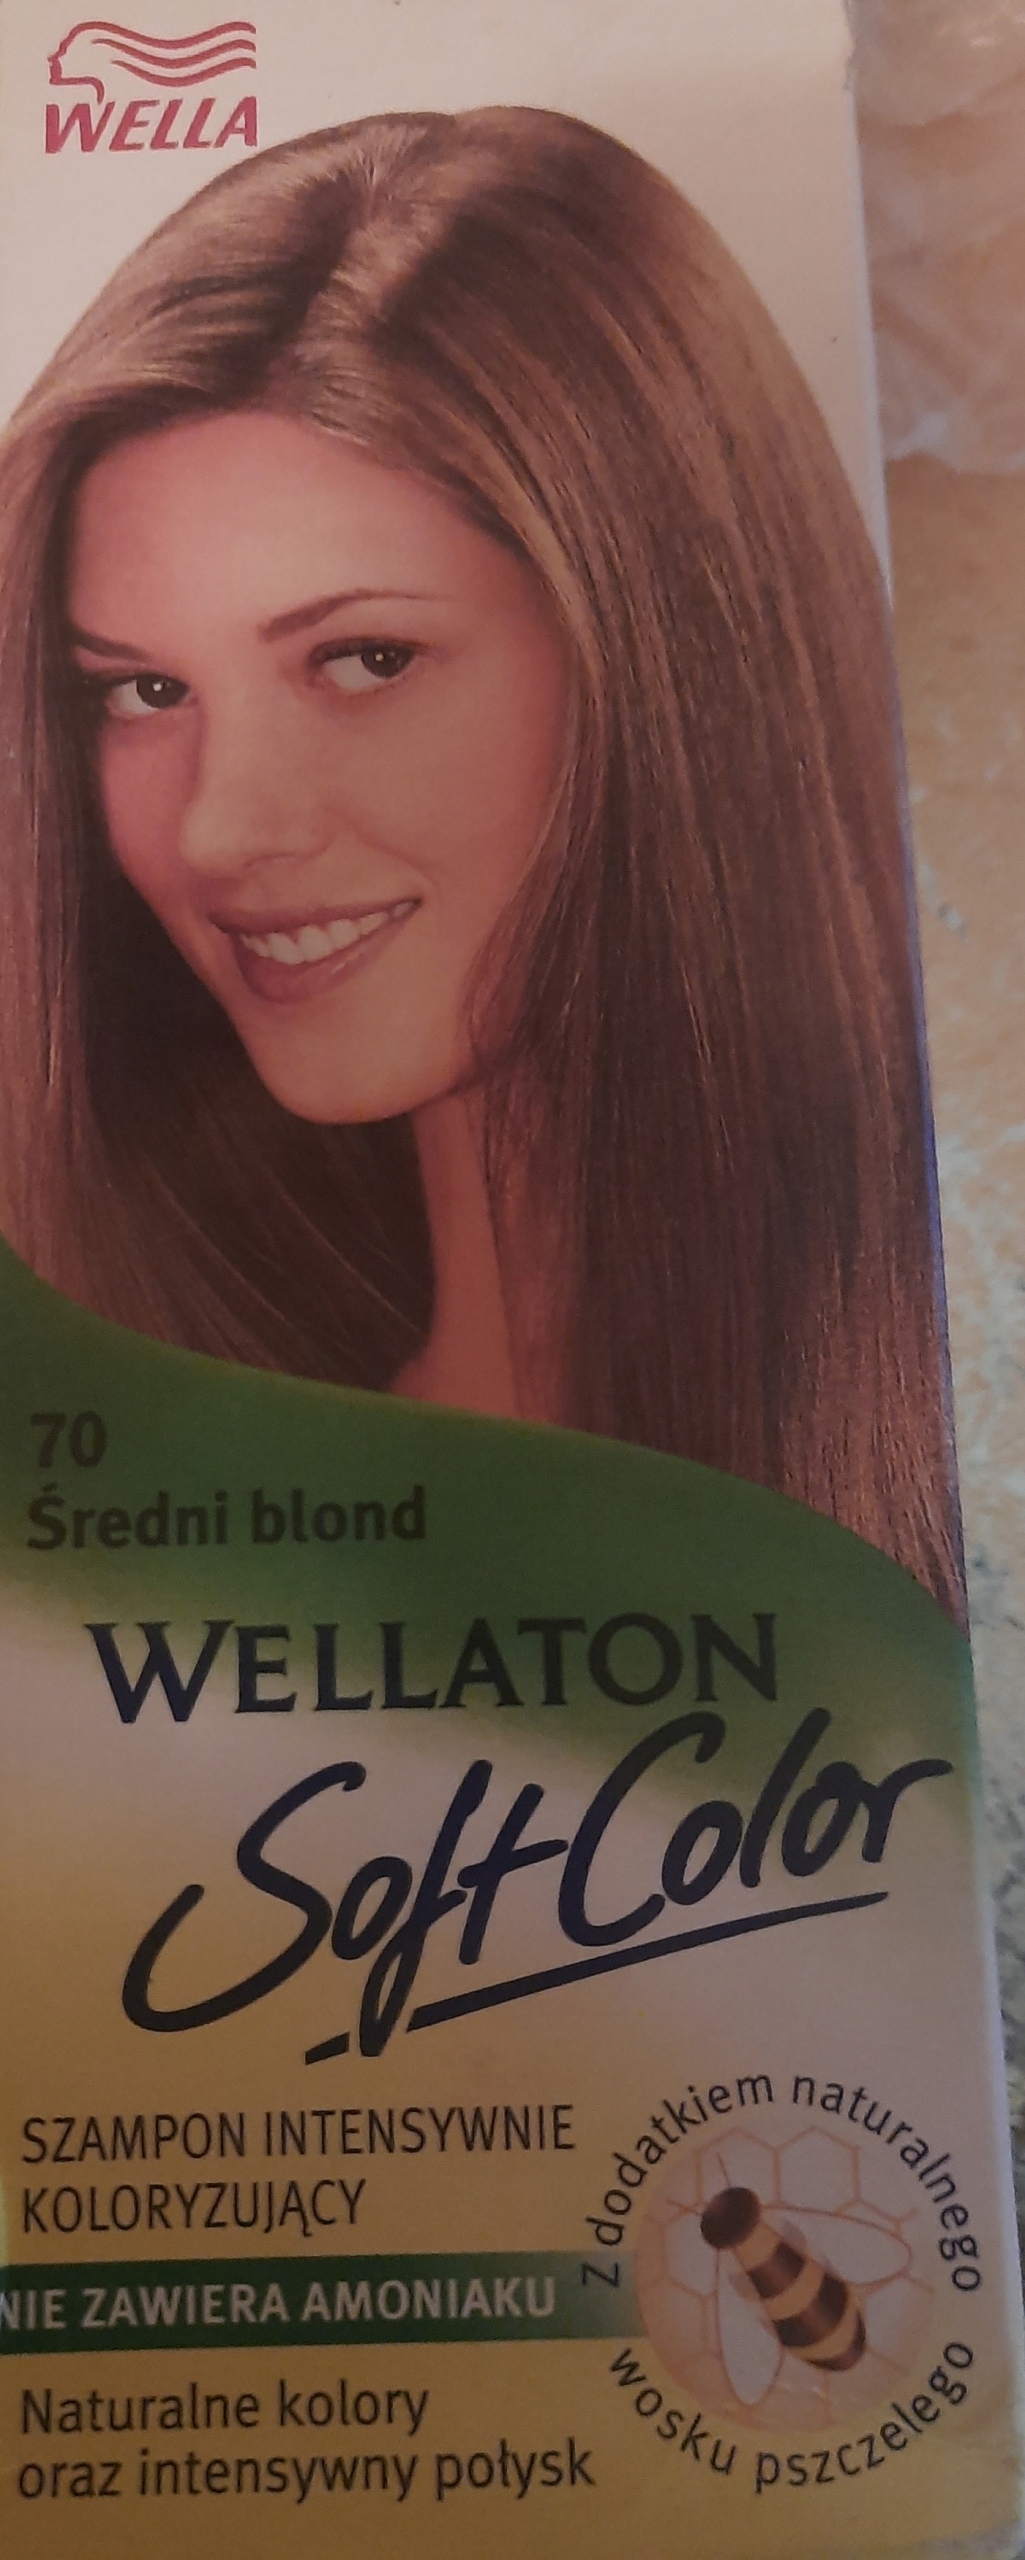 szampon koloryzujący wellaton nr 70 średni blond